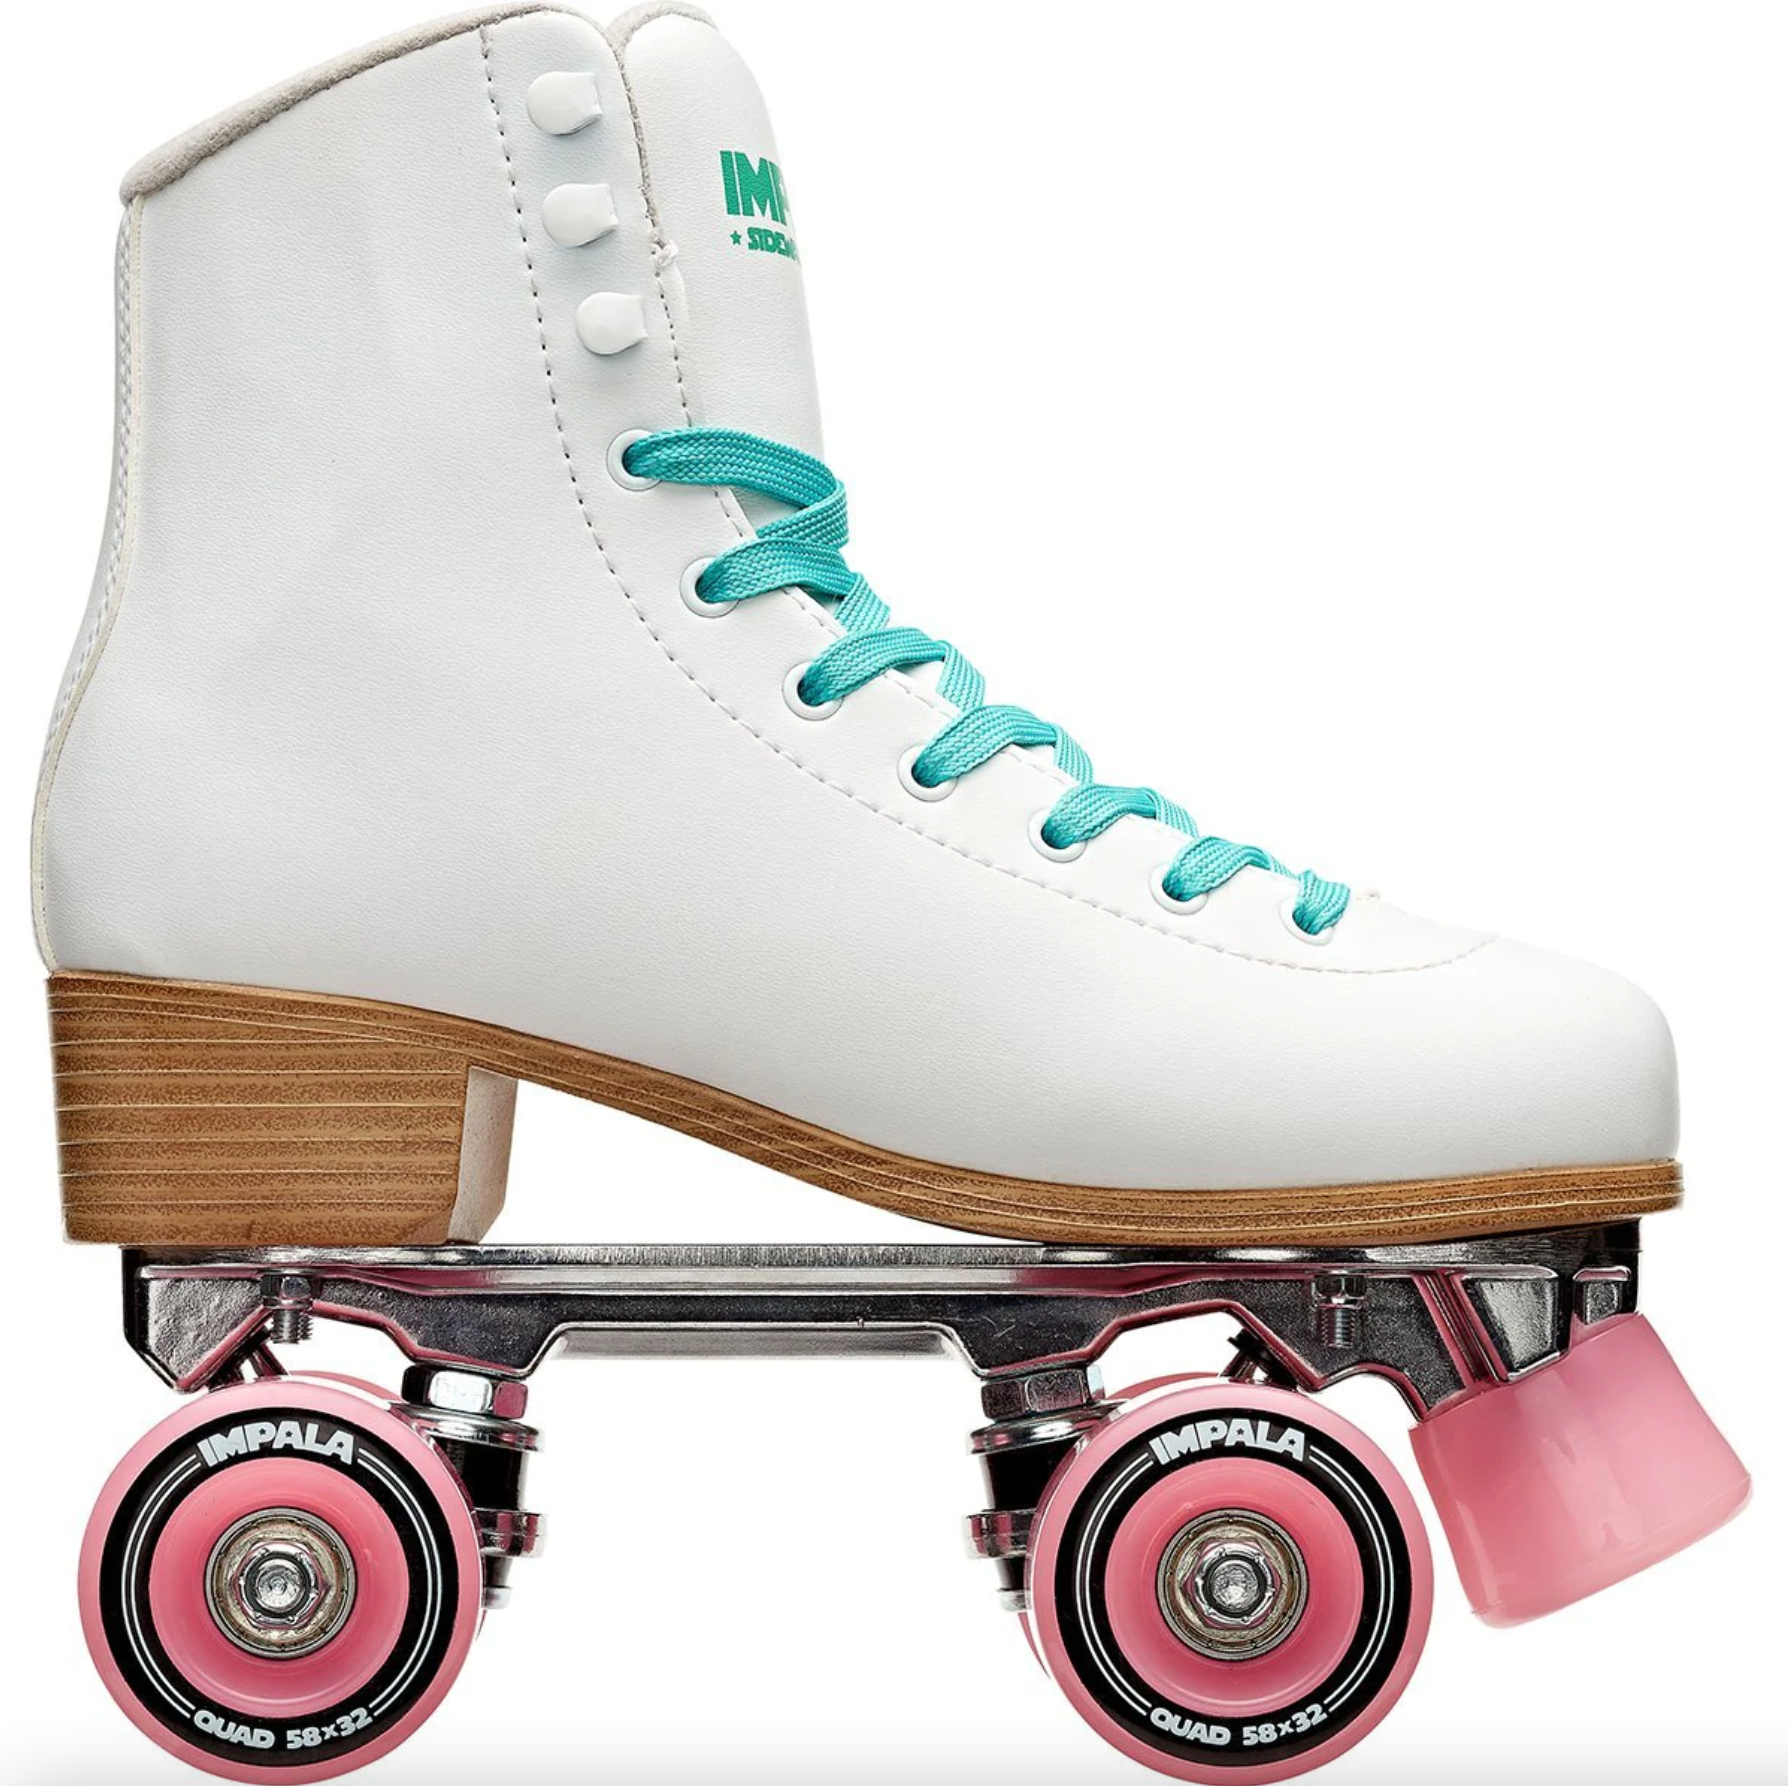 Rollerblades, Rollerblading, Inline Skates, Inline Skating, Skate Shops Near Me, Intuition Skate Shop, Roller Skates, Impala White roller skates